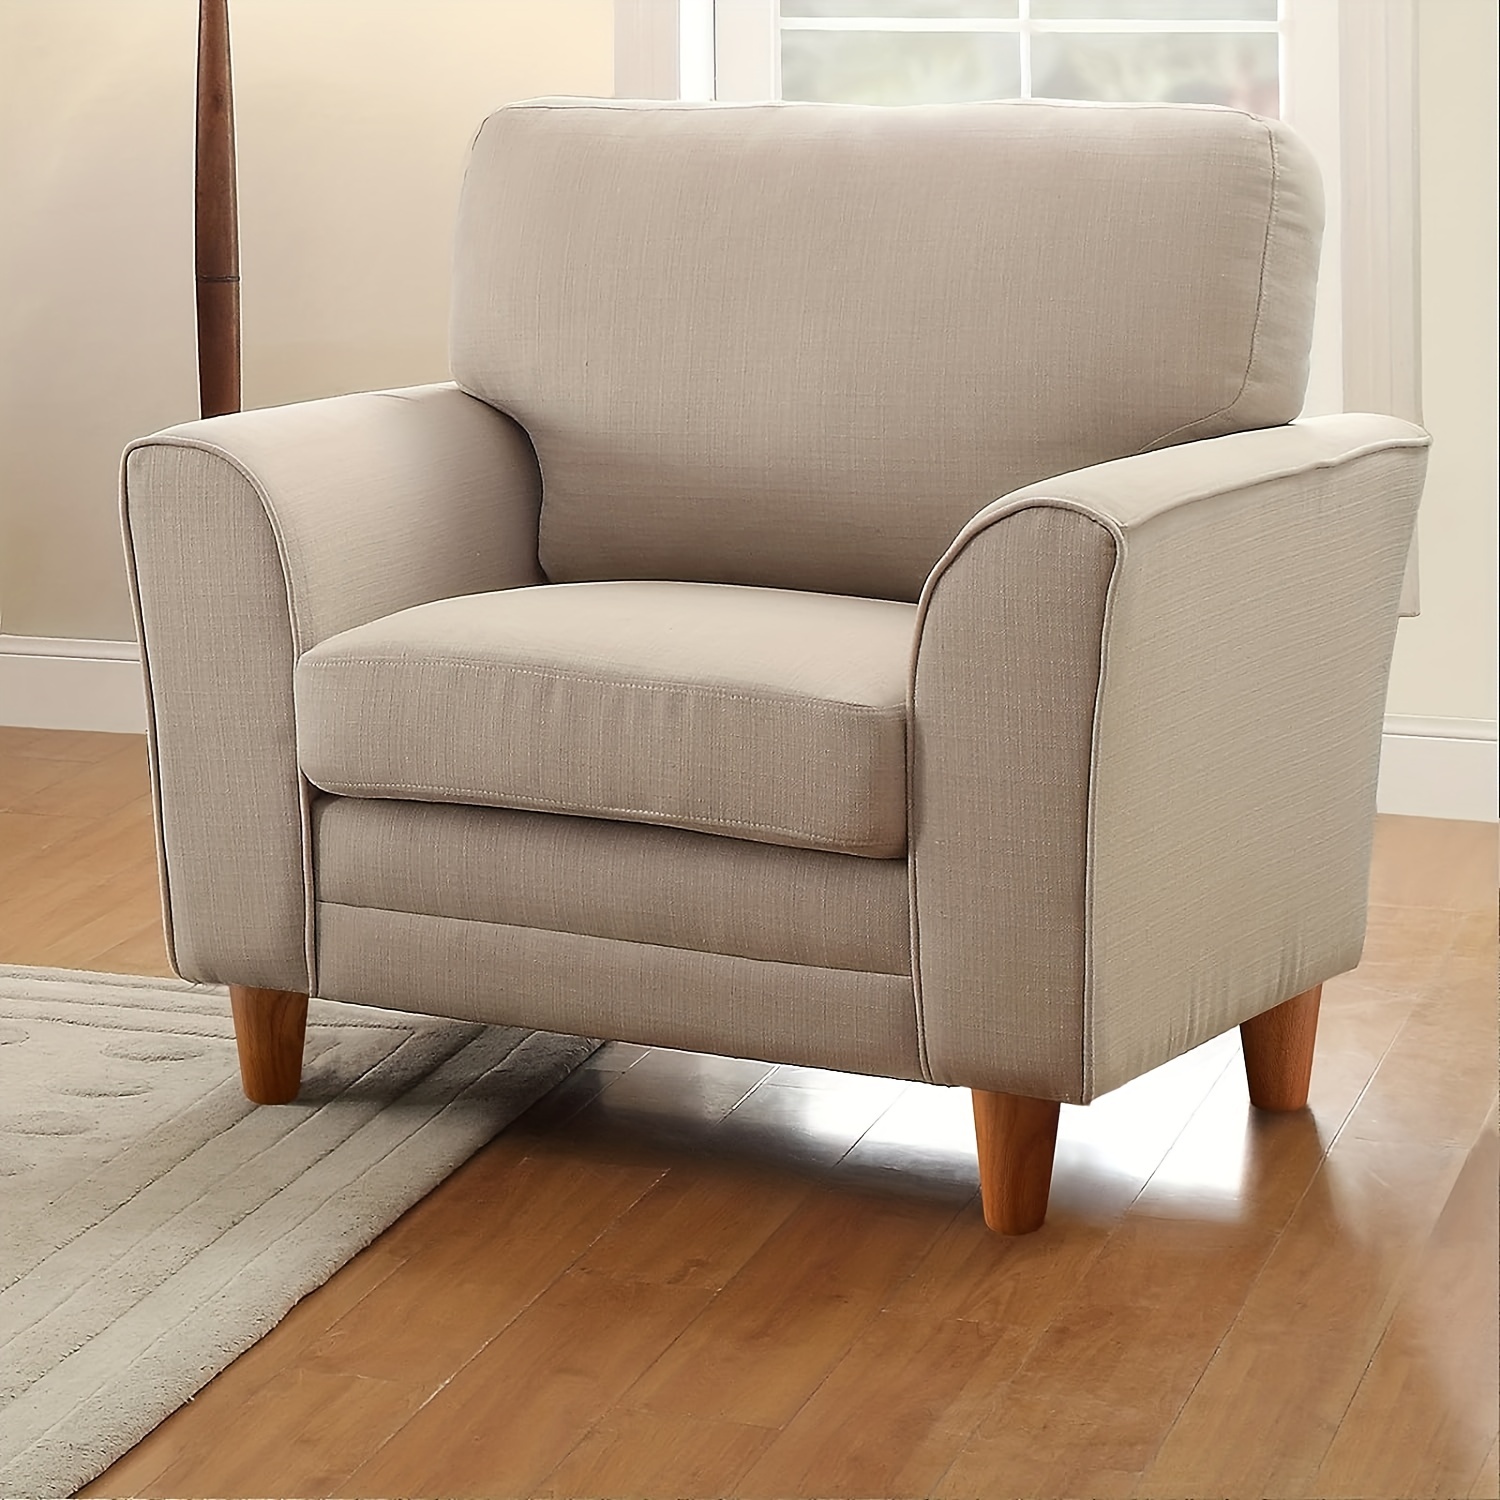 Patas de madera para muebles de 2 a 4 pulgadas, patas de repuesto modernas  de madera maciza para sofá, sillón, sillón, patas de gabinete para muebles